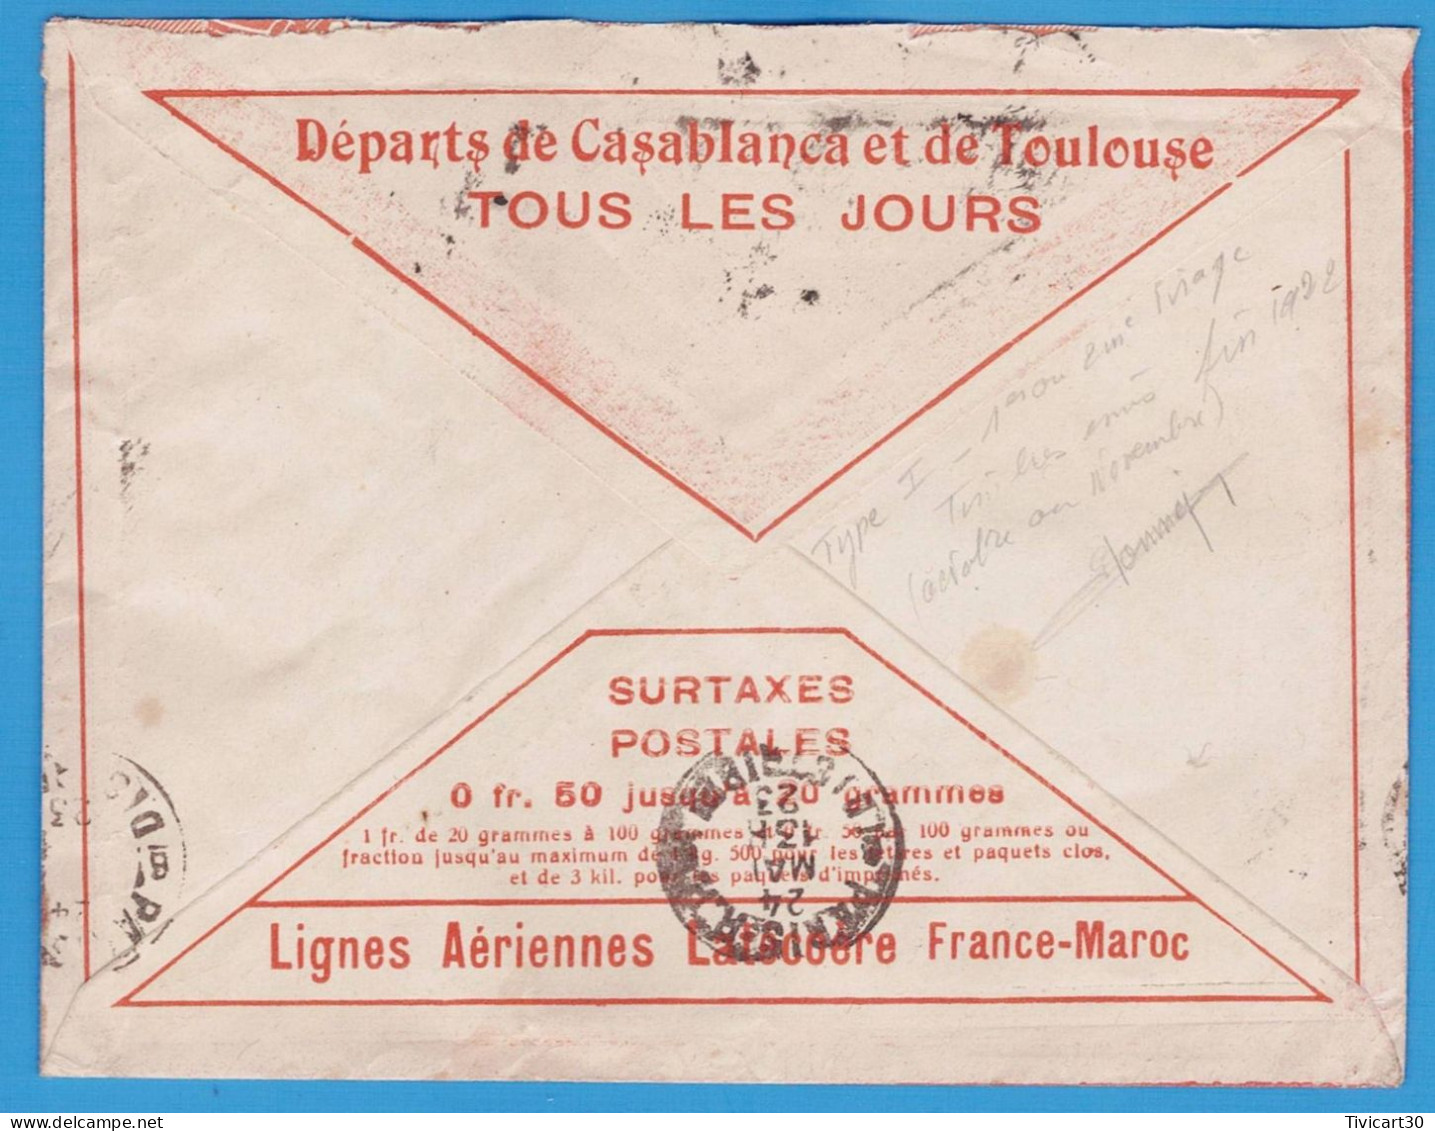 LETTRE PAR AVION DE 1923 - LIGNES AERIENNES LATECOERE FRANCE-MAROC - CASABLANCA (MAROC) POUR PARIS - Airmail